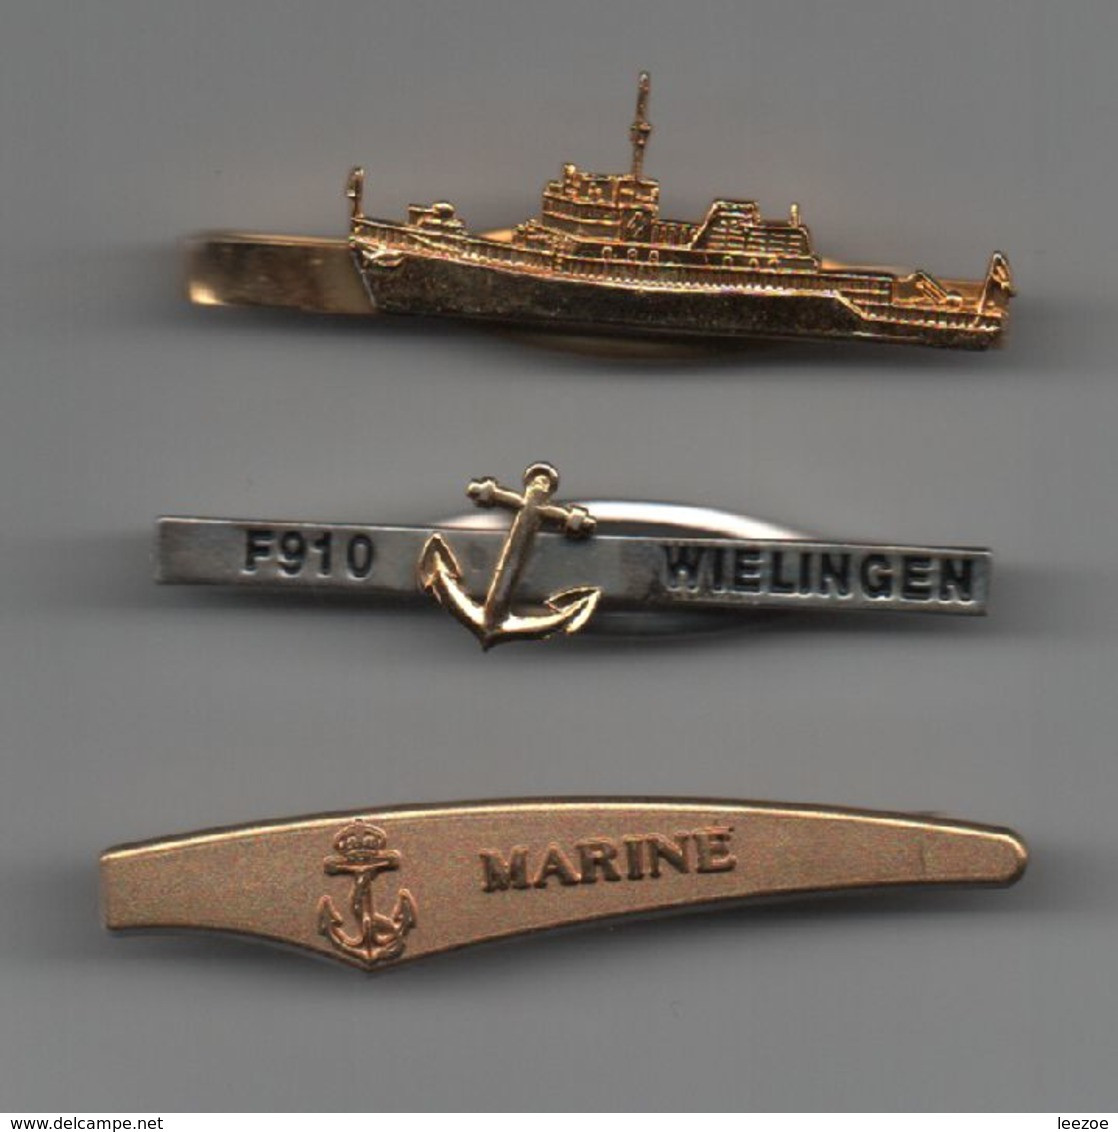 MARINE Pinces à Cravattes Marine F910 WIELINGEN, Bateaux, Navires....BT15 - Maritime Decoration